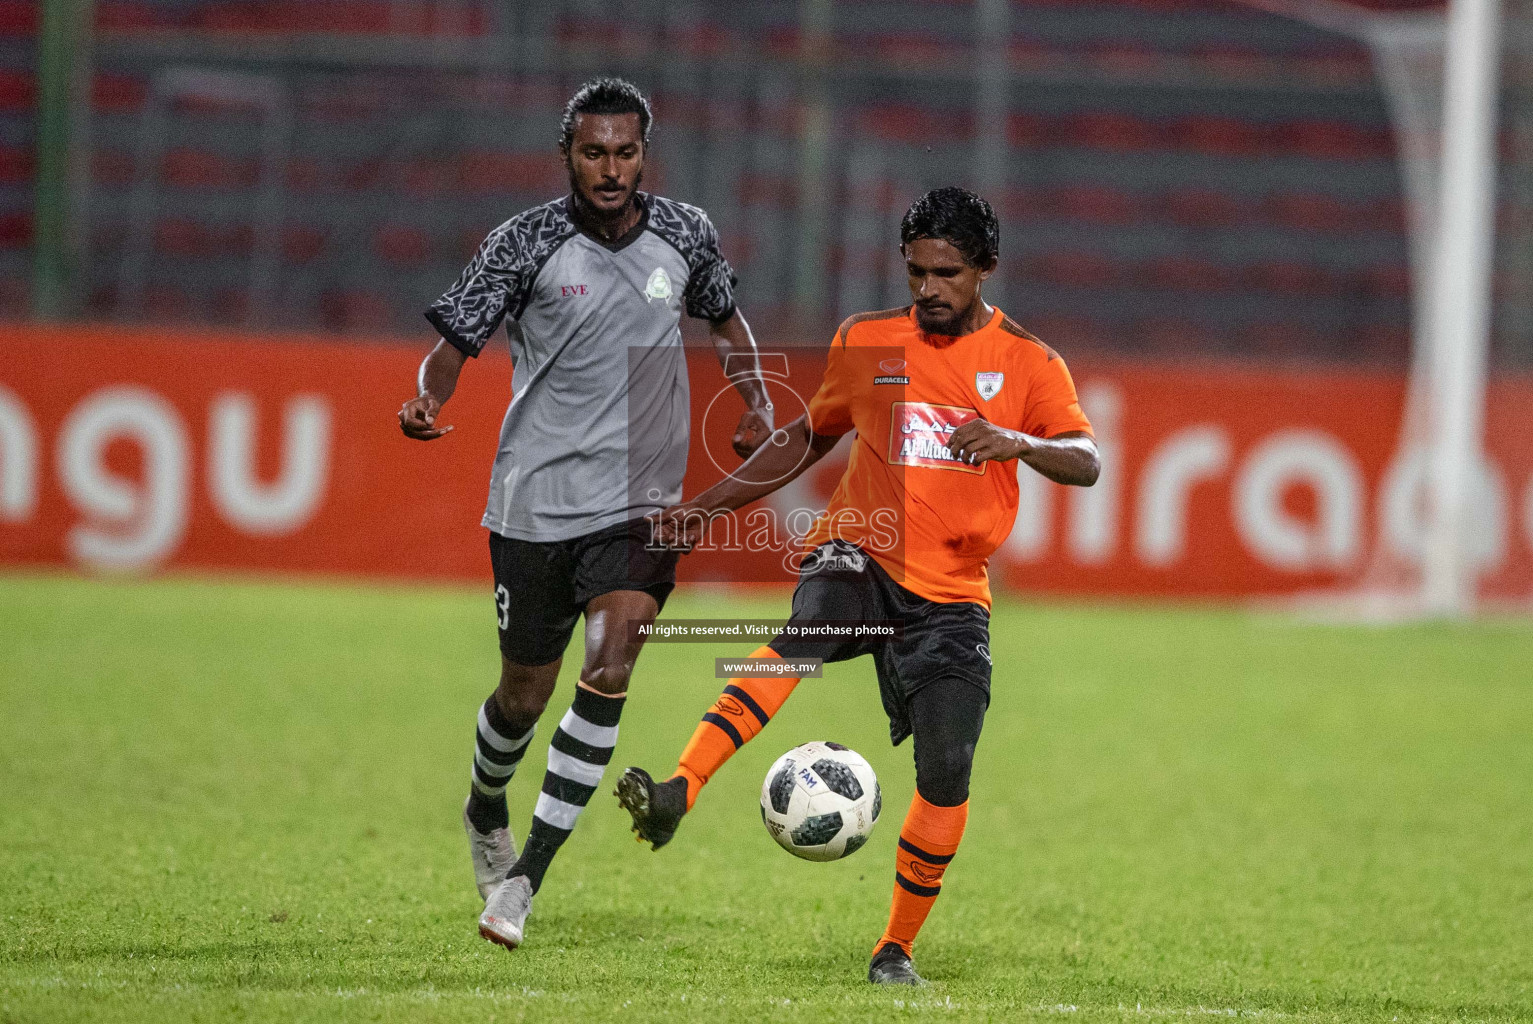 Club Eagles vs Club Green Streets in Dhiraagu Dhivehi Premier League 2019 held in Male', Maldives on 24th June 2019 Photos: Shuadh Abdul Sattar/images.mv